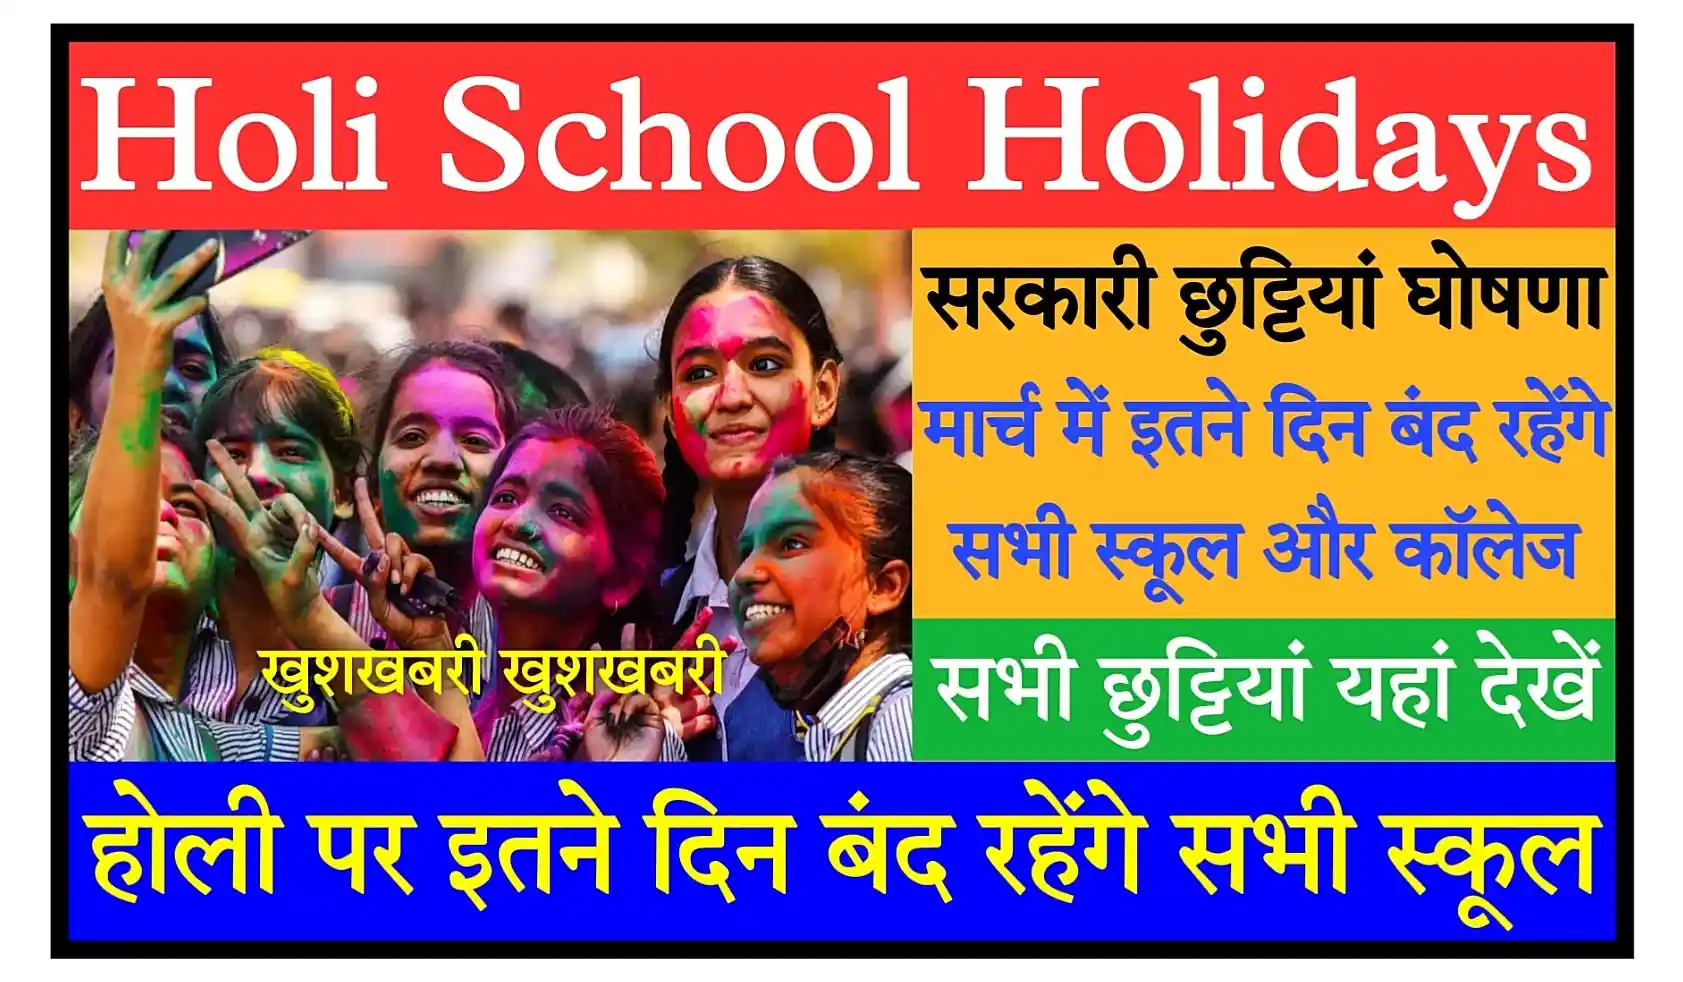 Holi School Holiday 2023 सभी स्कूलों, कॉलेजों में होली की छुट्टियां घोषित, मार्च में इतने दिन बंद रहेंगे सभी स्कूल, कॉलेज